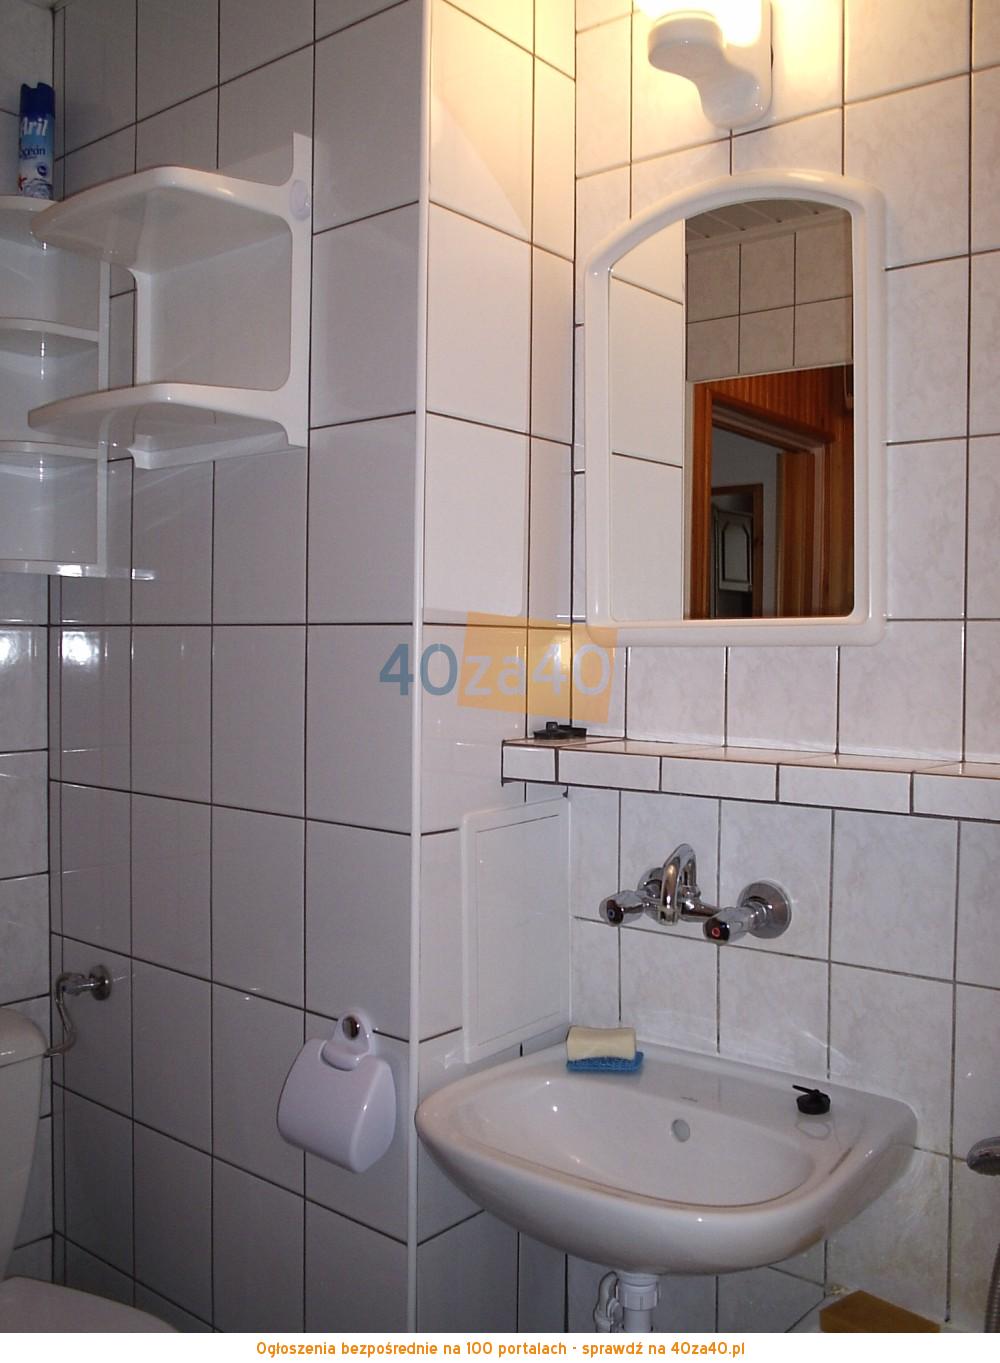 Mieszkanie do wynajęcia, pokoje: 2, cena: 700,00 PLN, Lubin, kontakt: 513961300